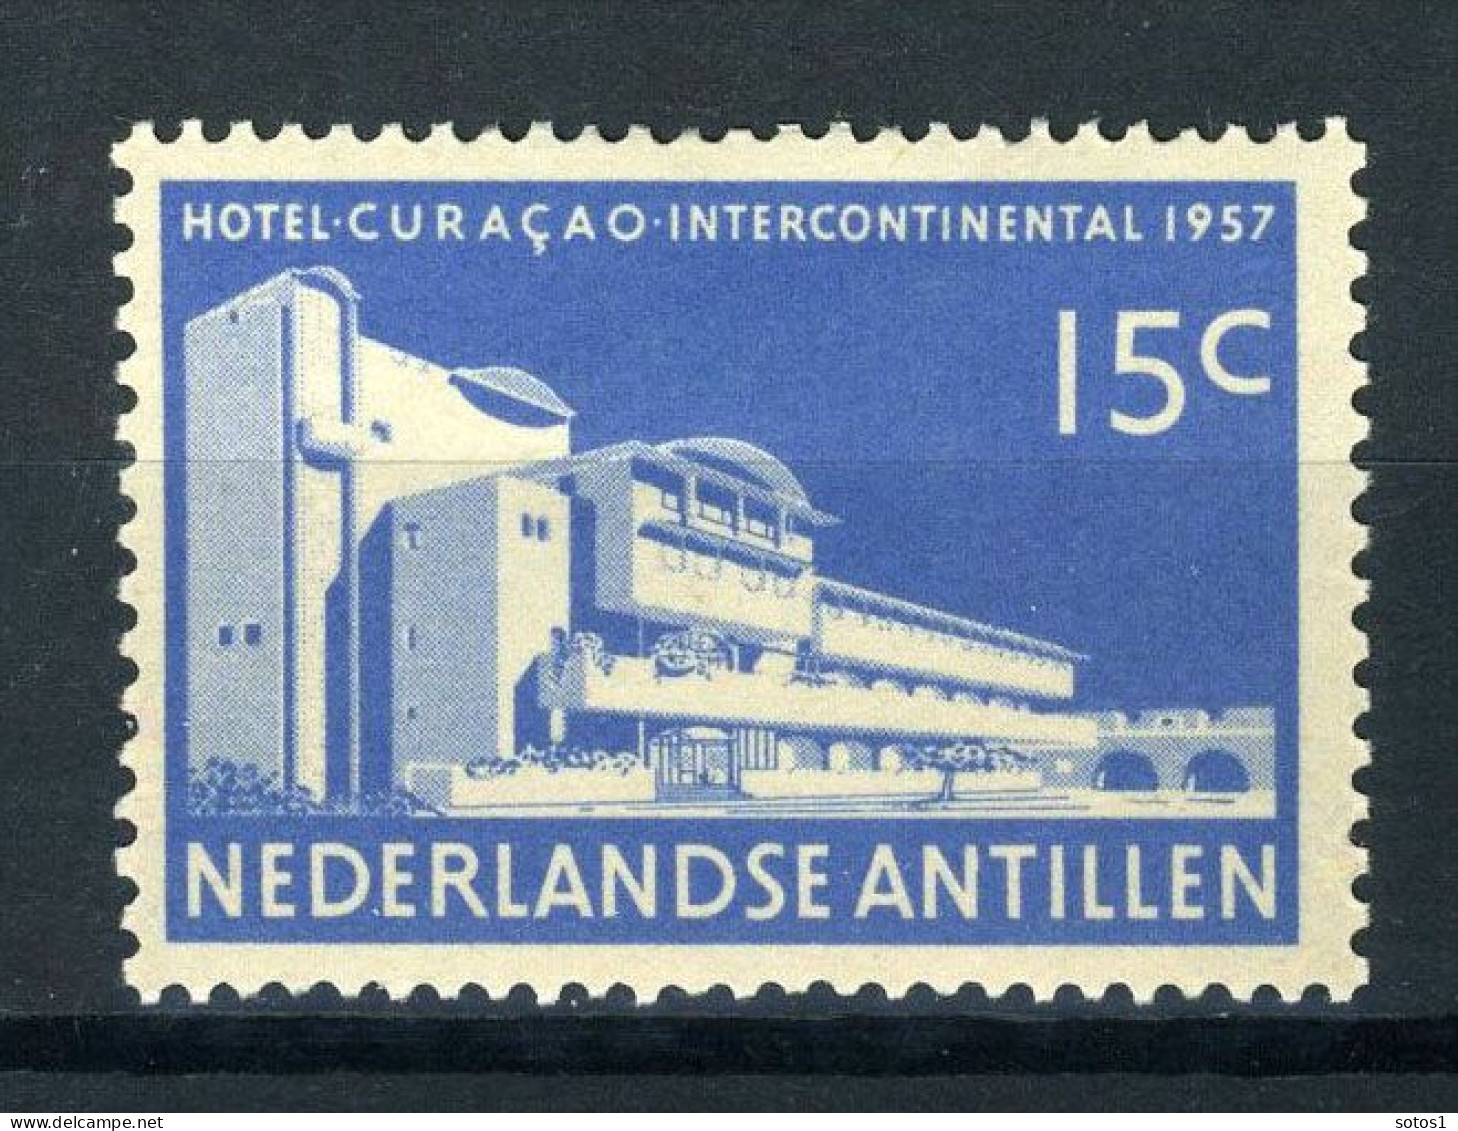 NL. ANTILLEN 269 MH 1957 - Opening Hotel Intercontinental Curaçao. - Curacao, Netherlands Antilles, Aruba